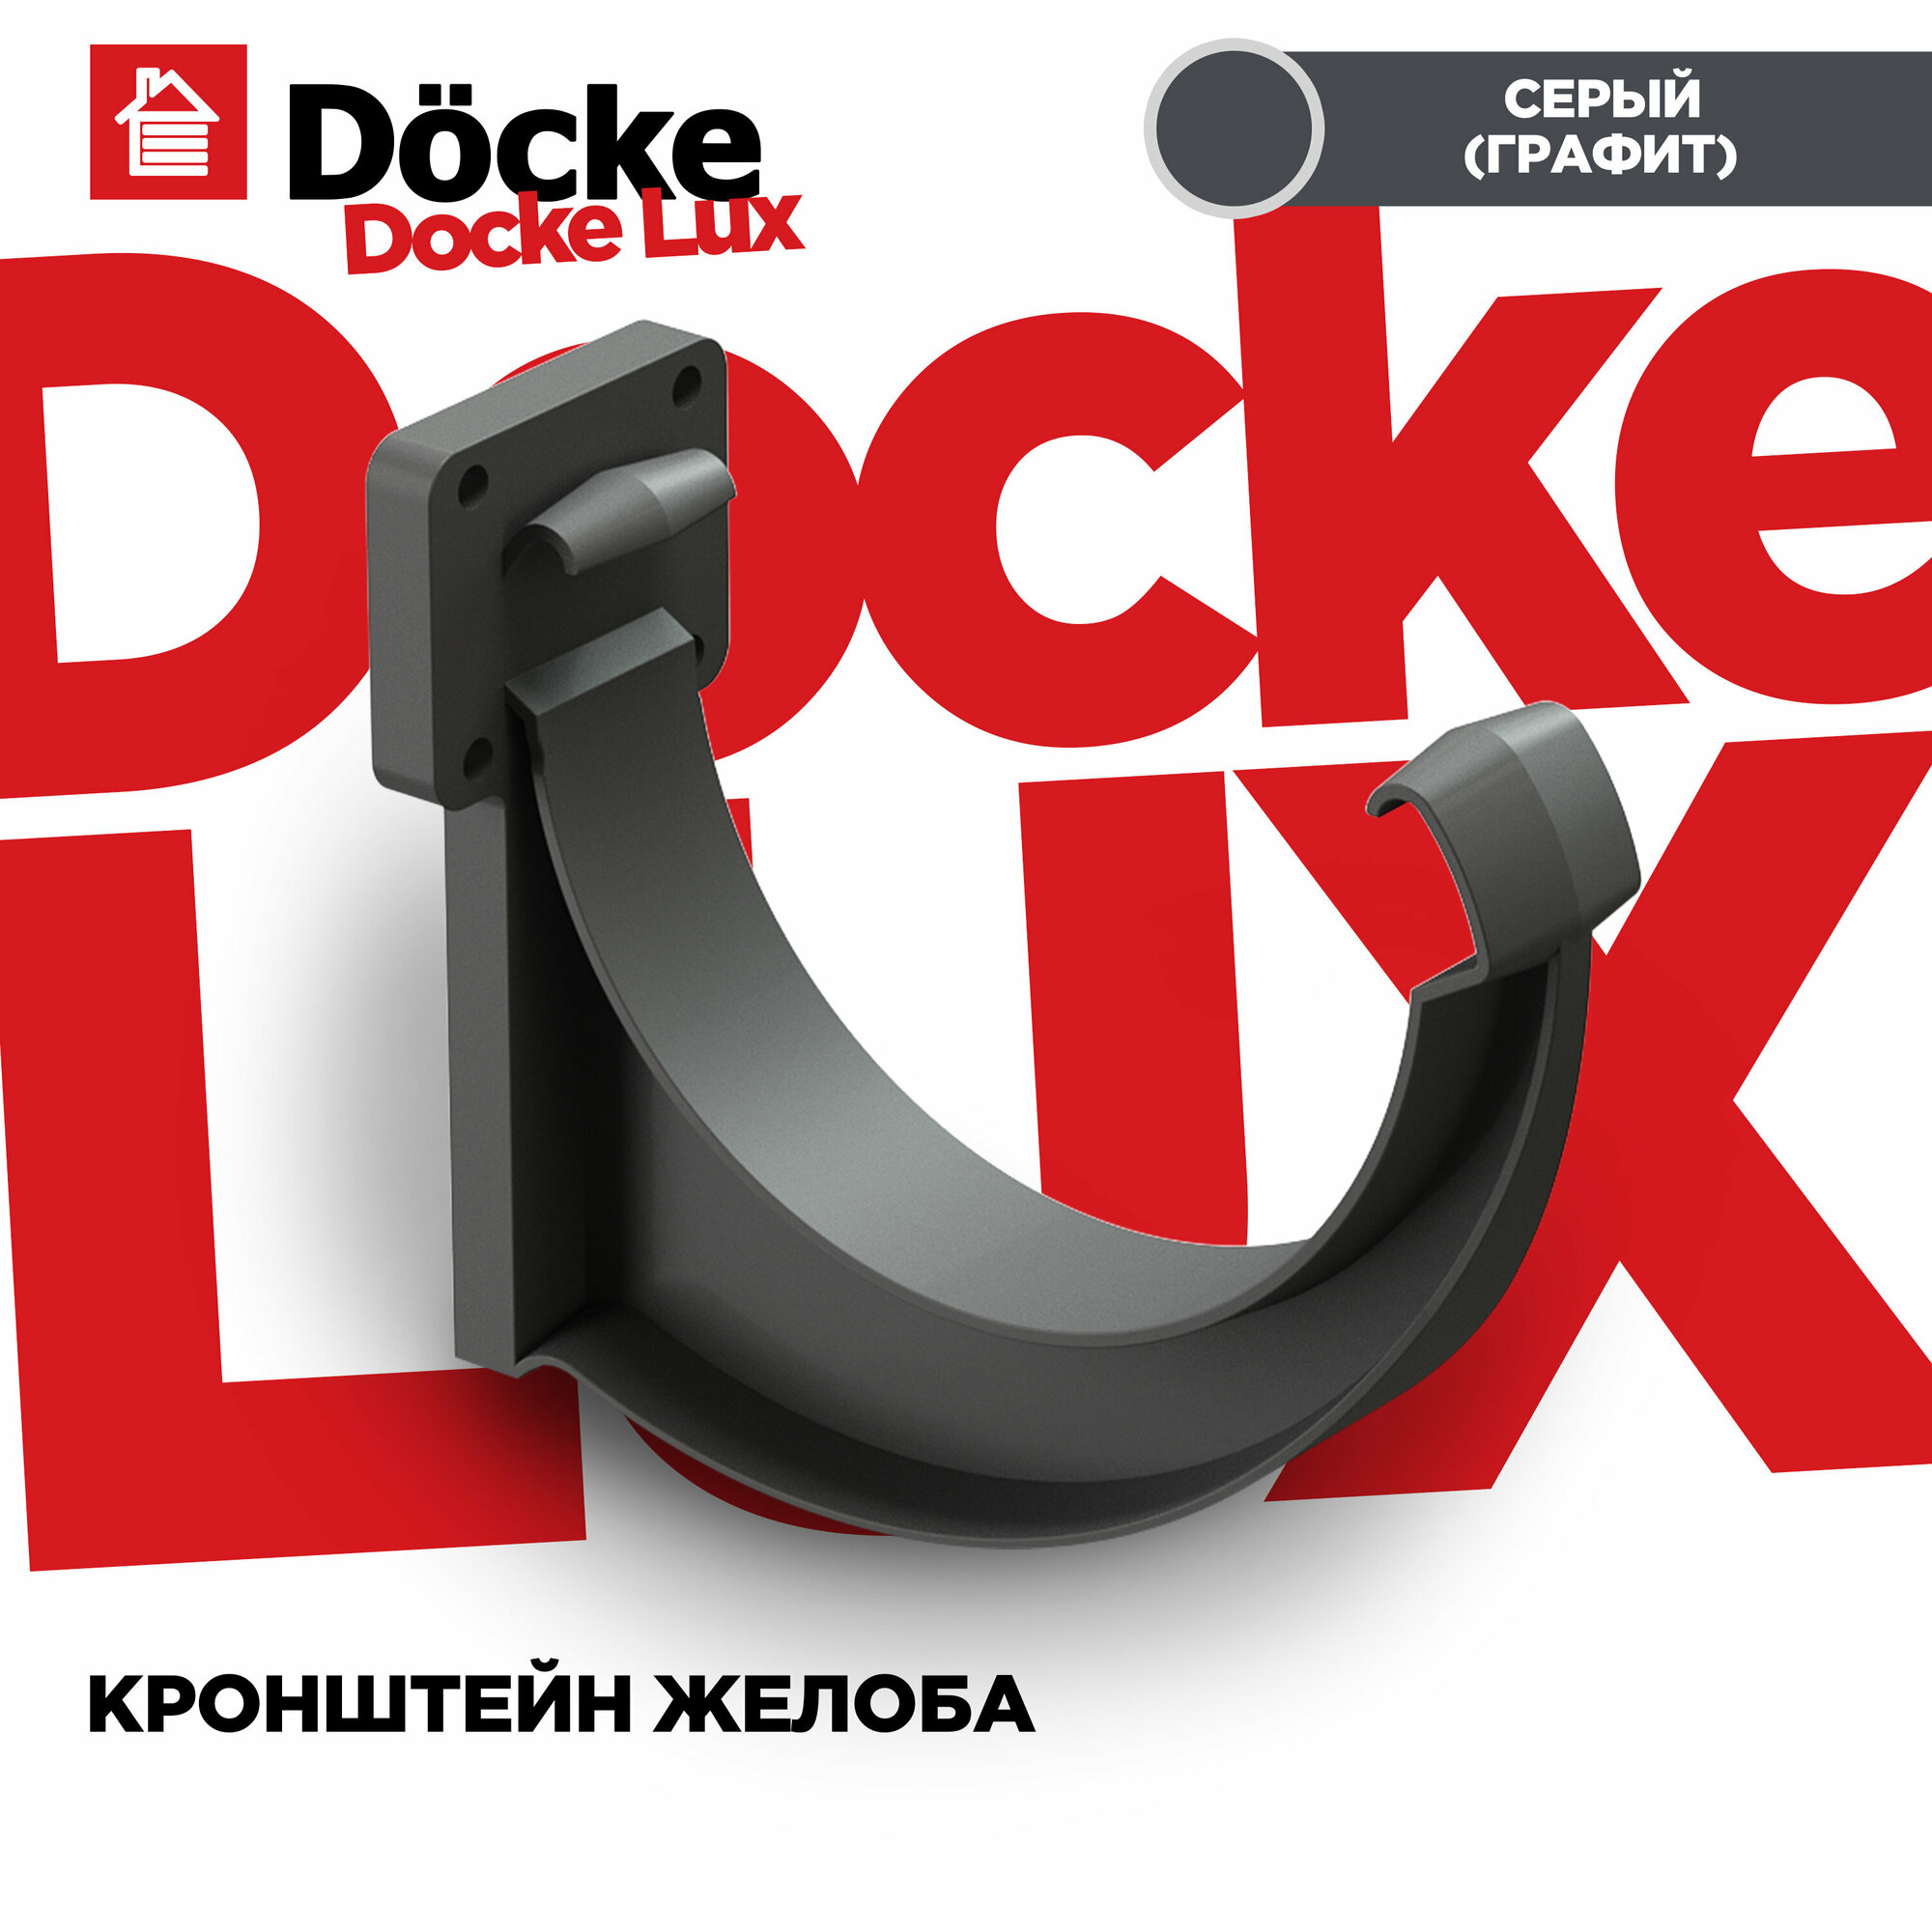 Кронштейн(Крюк) для желоба LUX водосточной системы docke, цвет Графит (Серый). 3 штуки в комплекте - фотография № 2